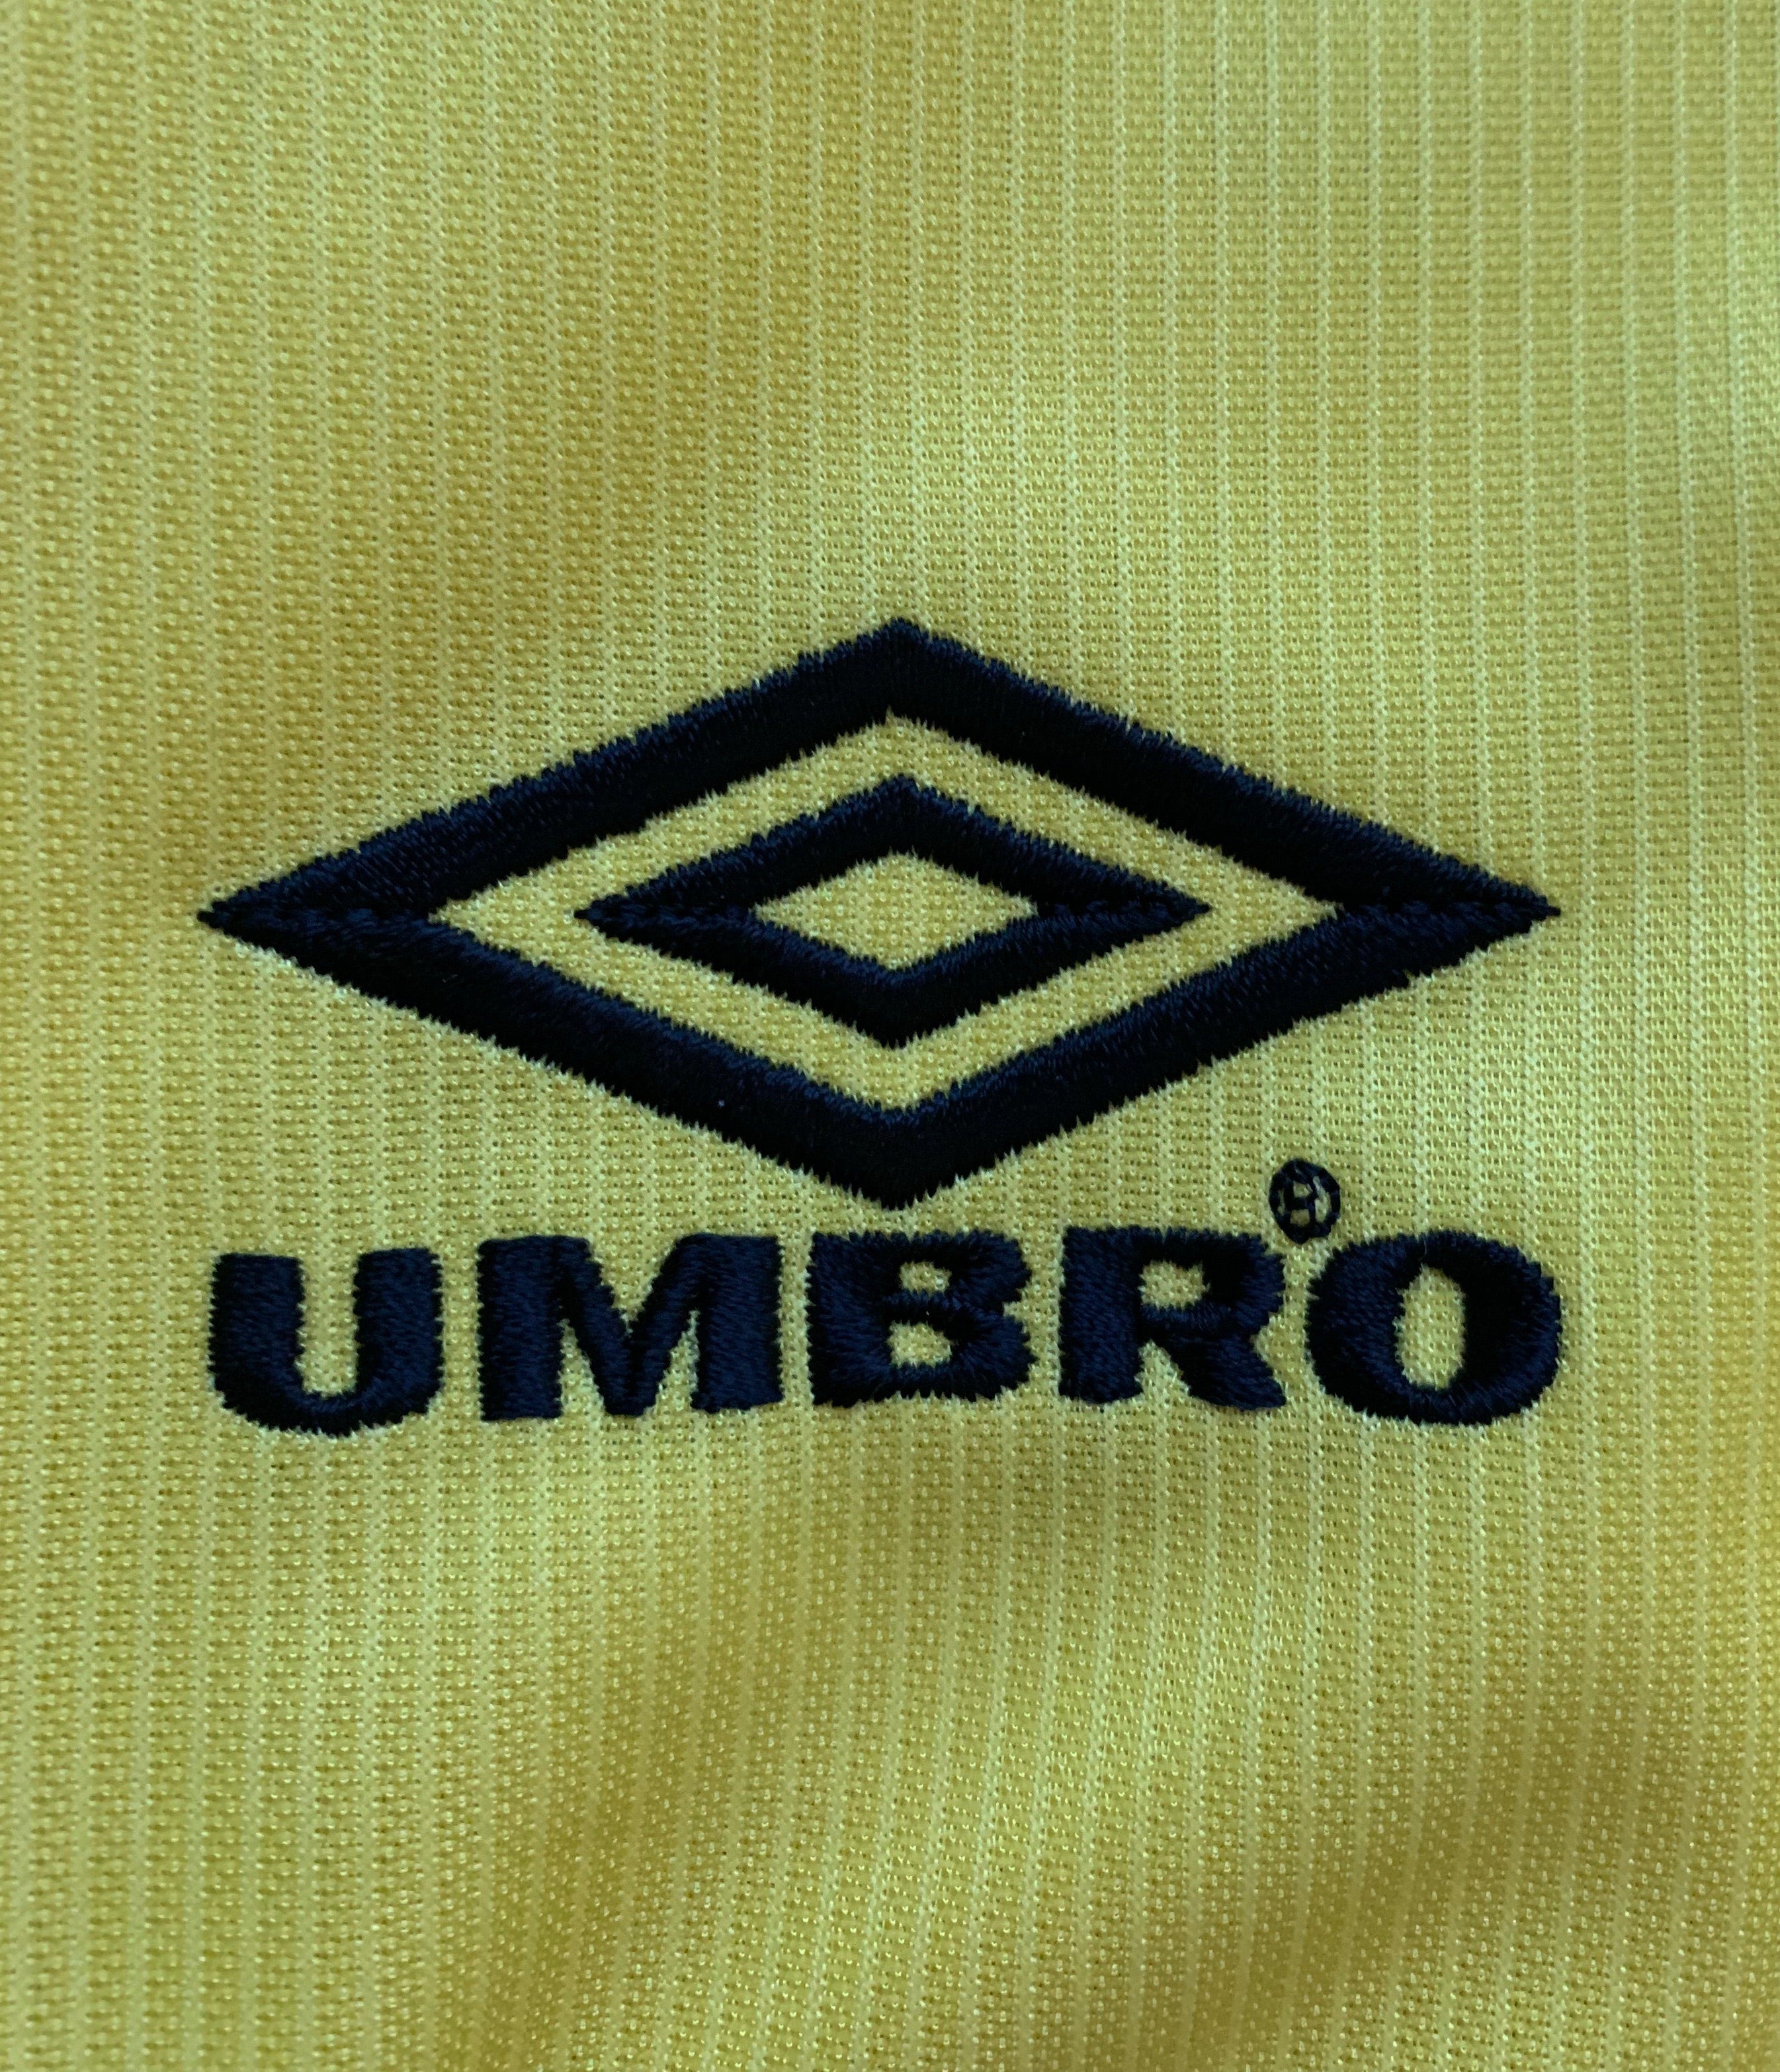 1999/00 Camiseta visitante del Everton (M) 10/10